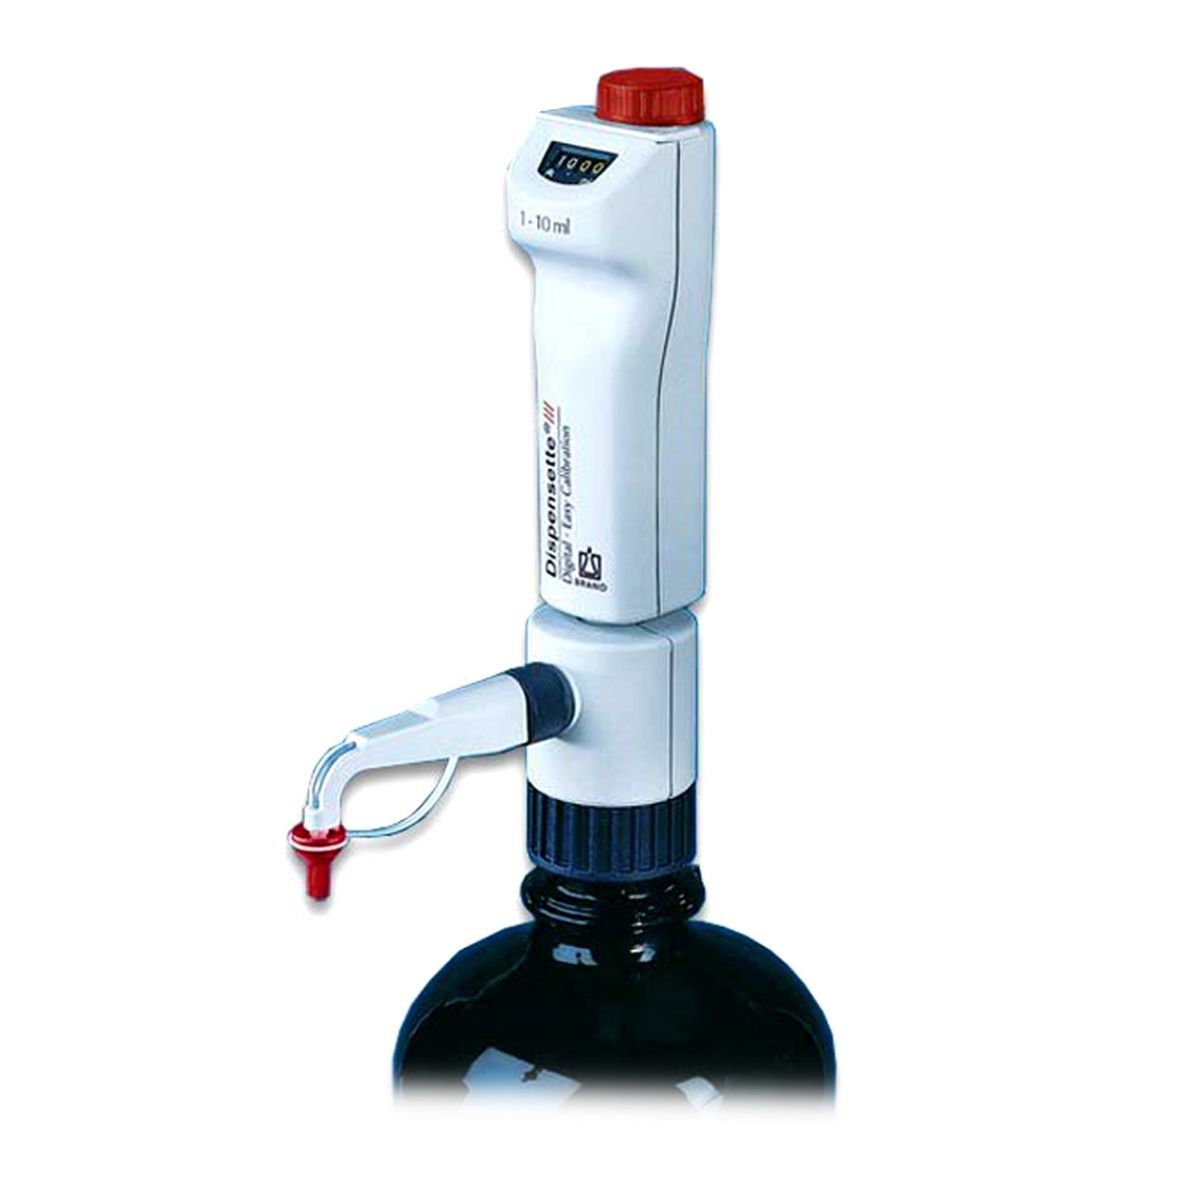 Dispensador Dispensette III Digital Easy Calibration com Válvula Safety Prime 0,5- 5 ml Brand